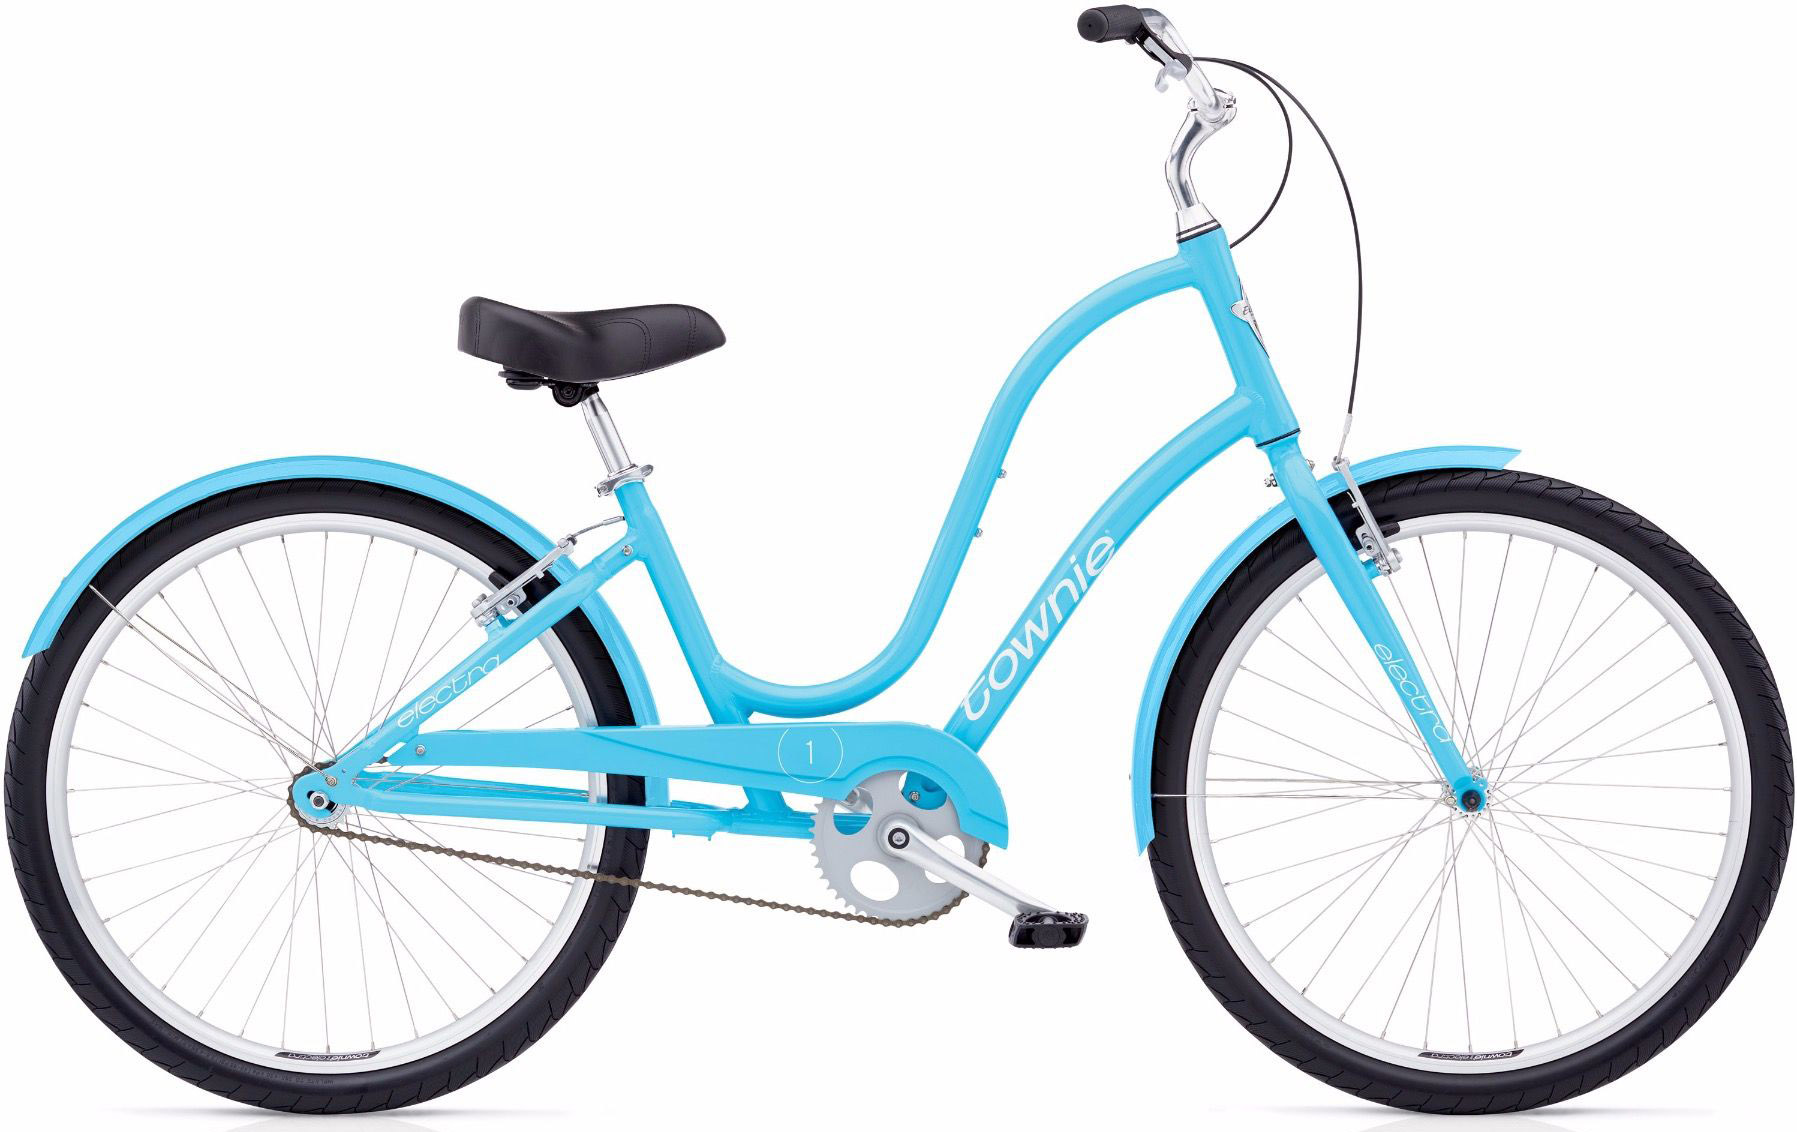  Отзывы о Женском велосипеде Electra Townie Original 1 Ladies 2020